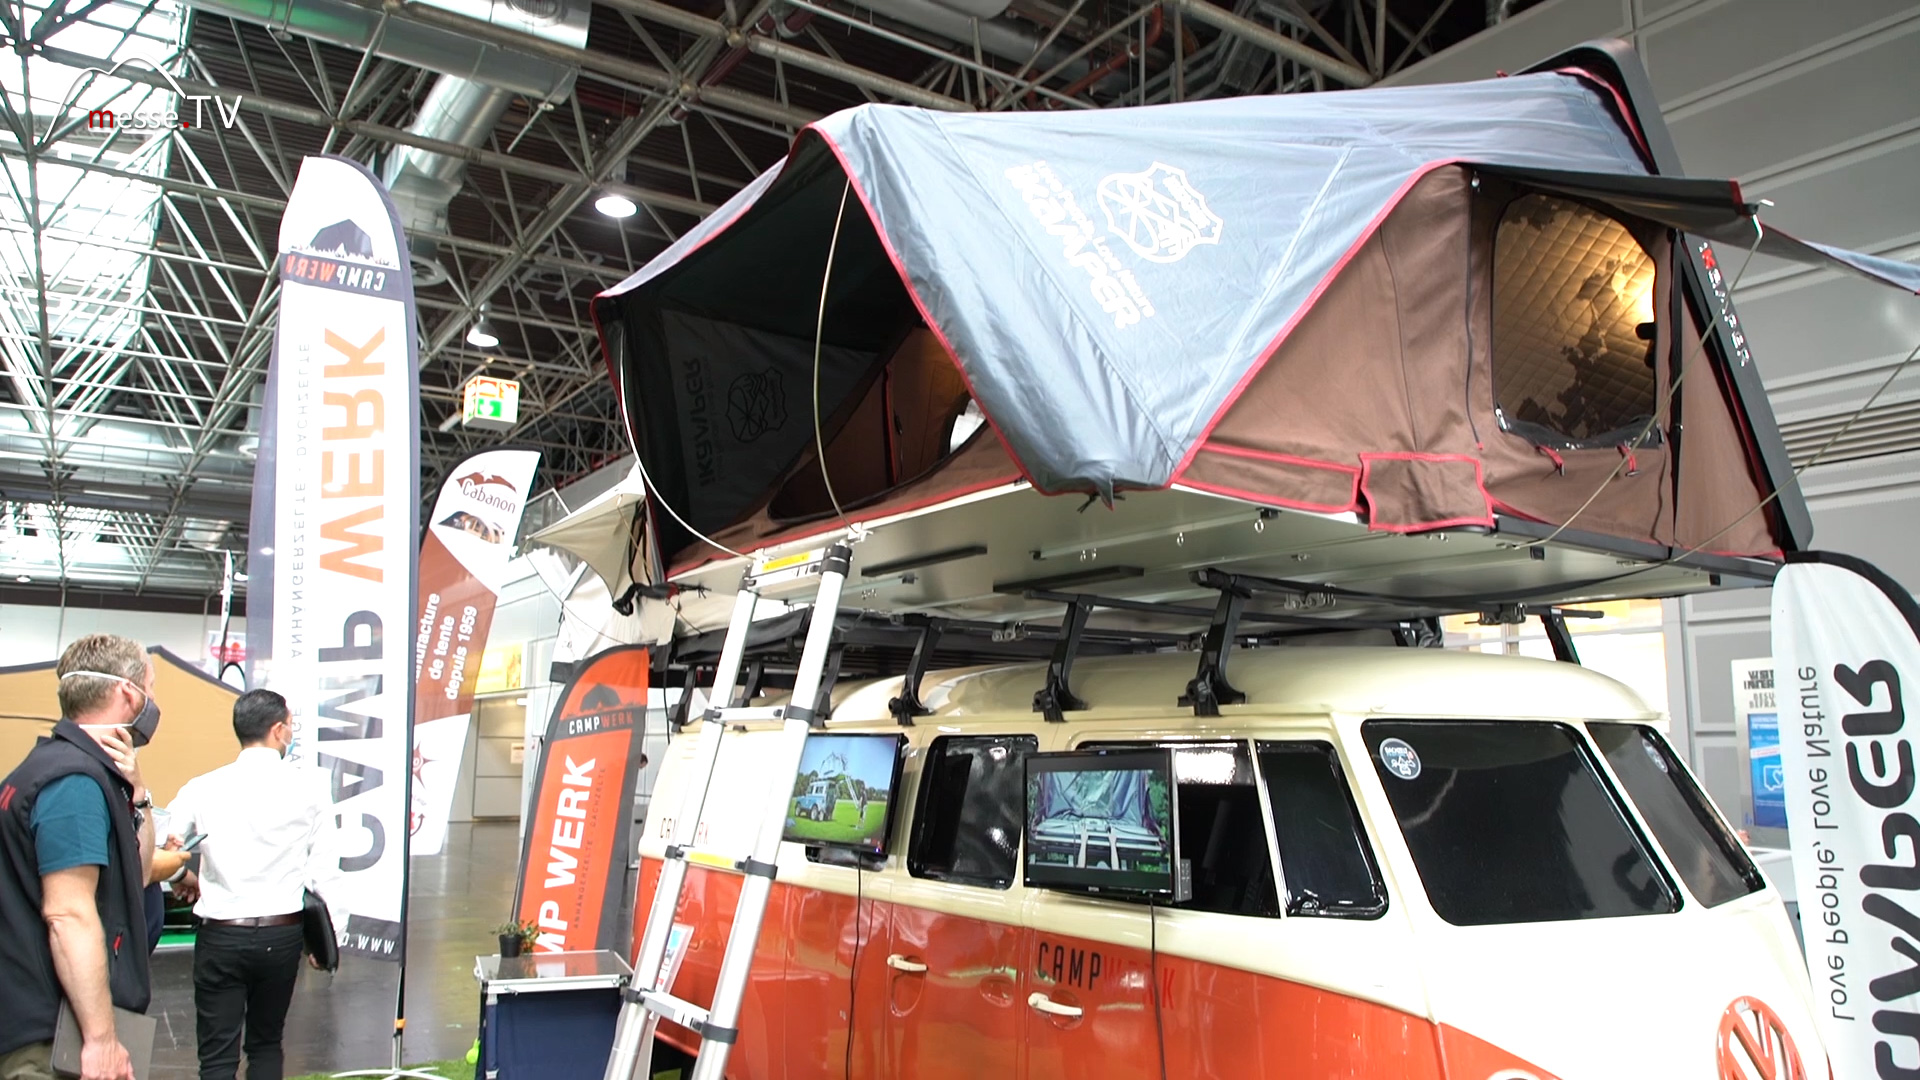 iKamper roof tent Campwerk Caravan Salon 2020 Dusseldorf